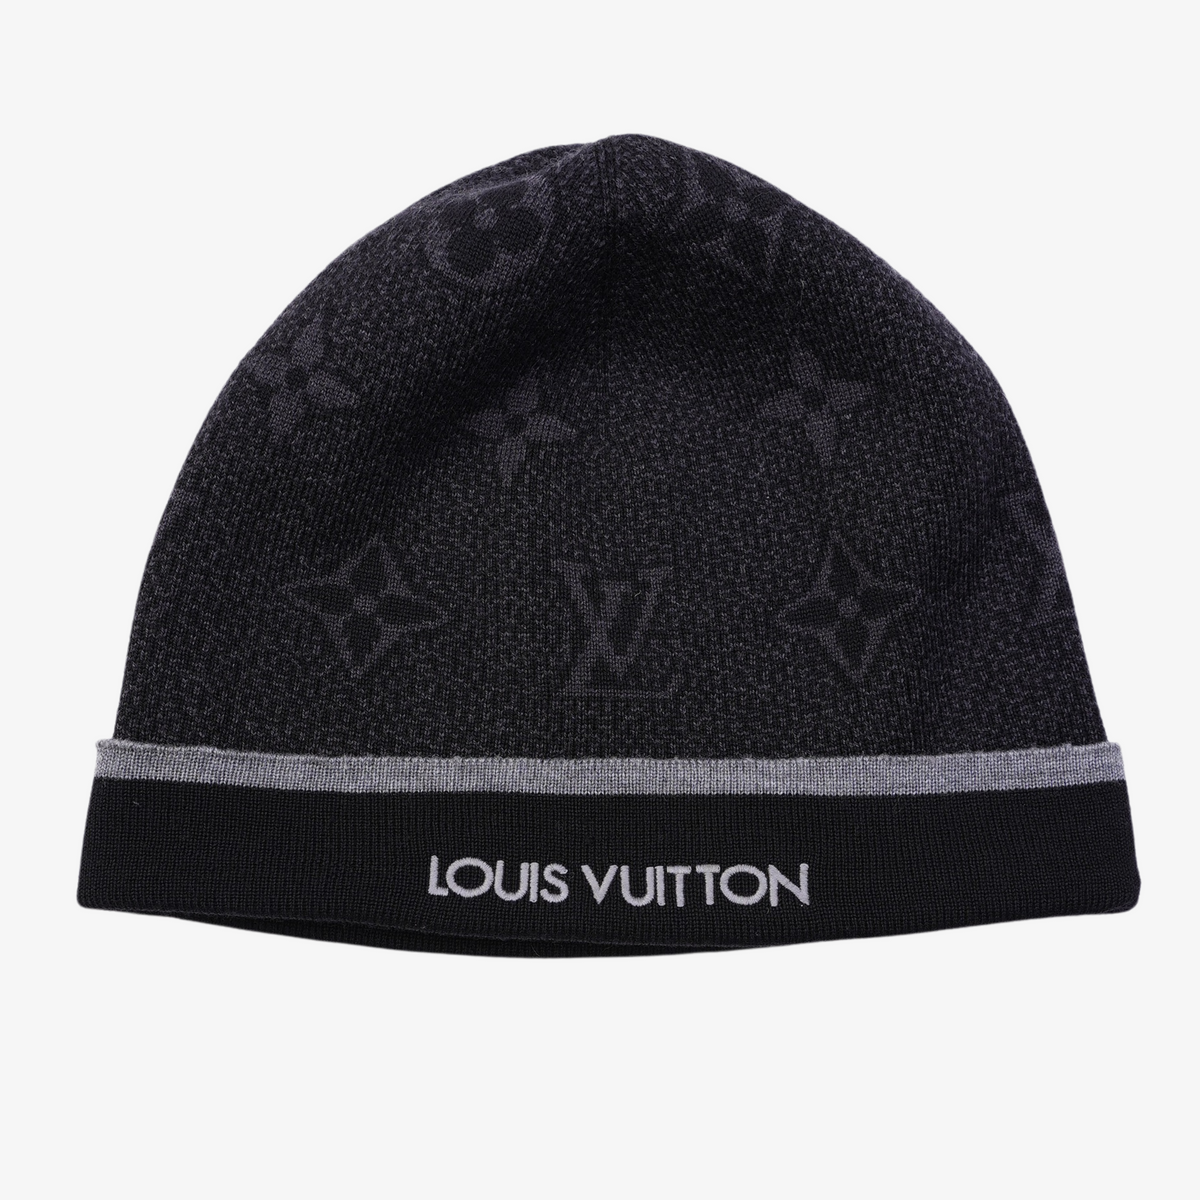 Louis Vuitton Hat  Louis vuitton hat, Black louis vuitton, Vuitton